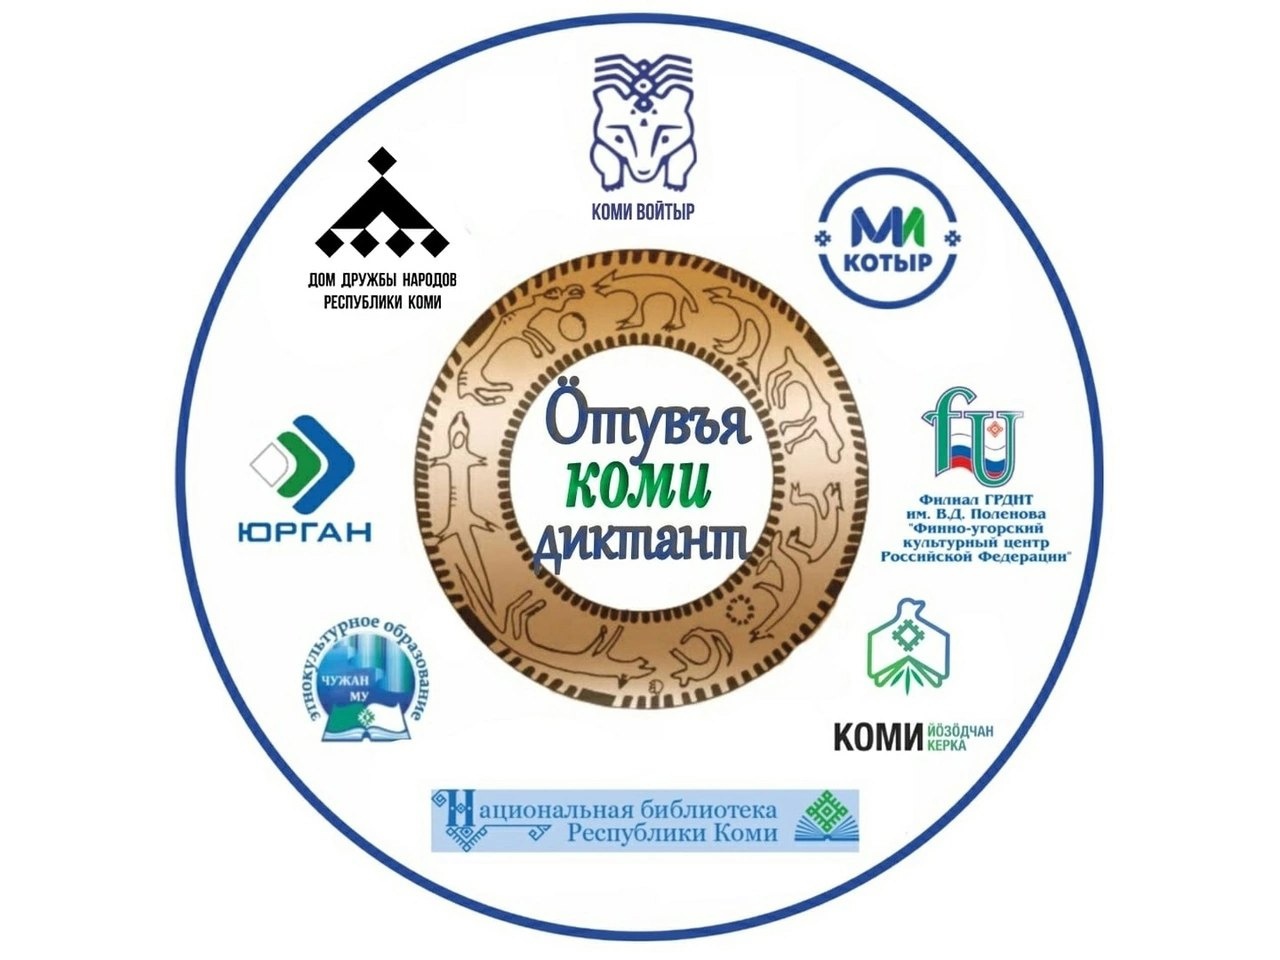 Сыктывдинский район примет участие во Всеобщем диктанте на коми языке.